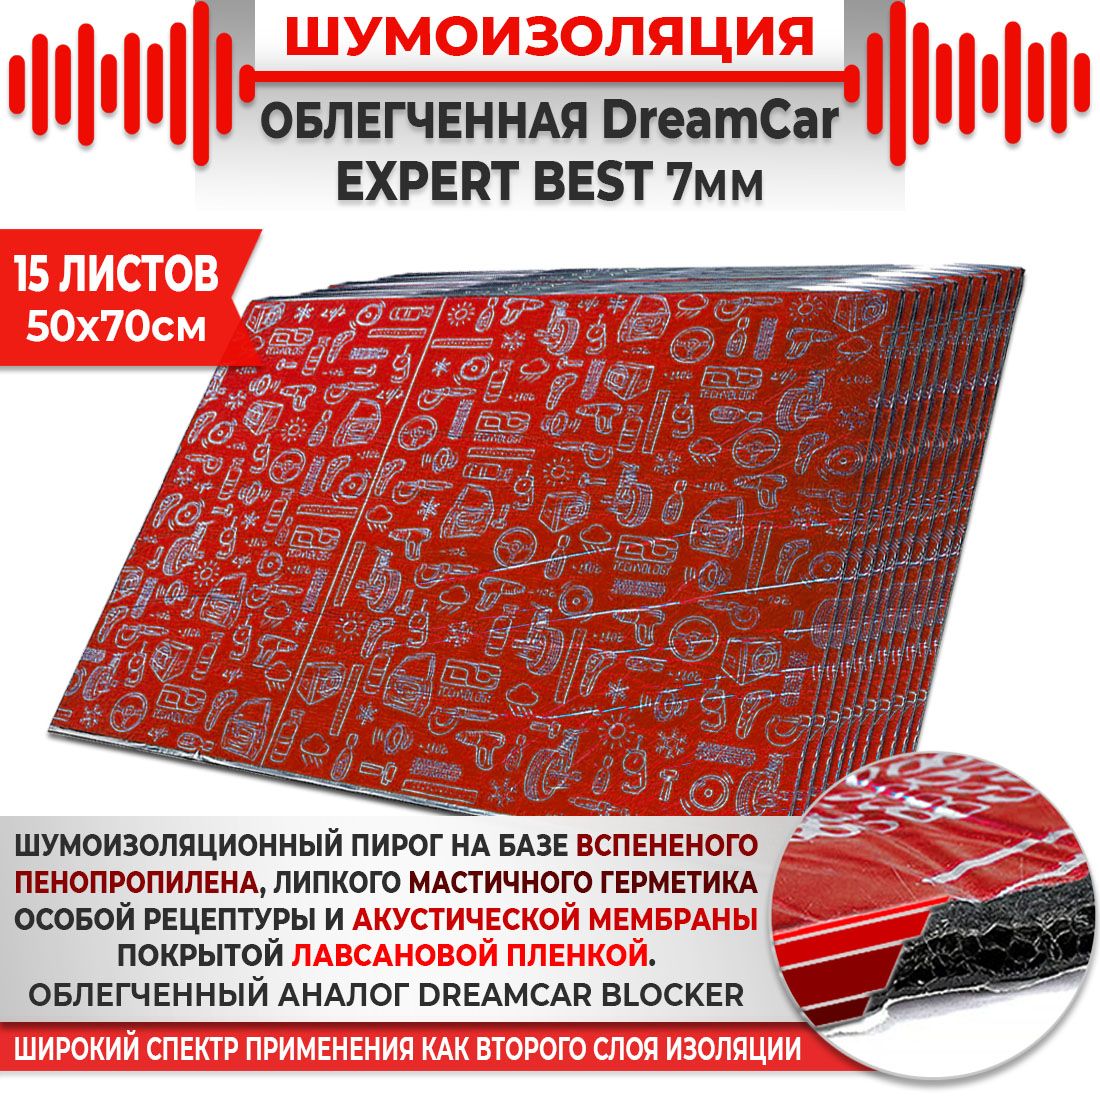 15шт. Шумоизоляция 4х слойная DreamCar Expert Best  7мм 0.7х0.5м 15 листов